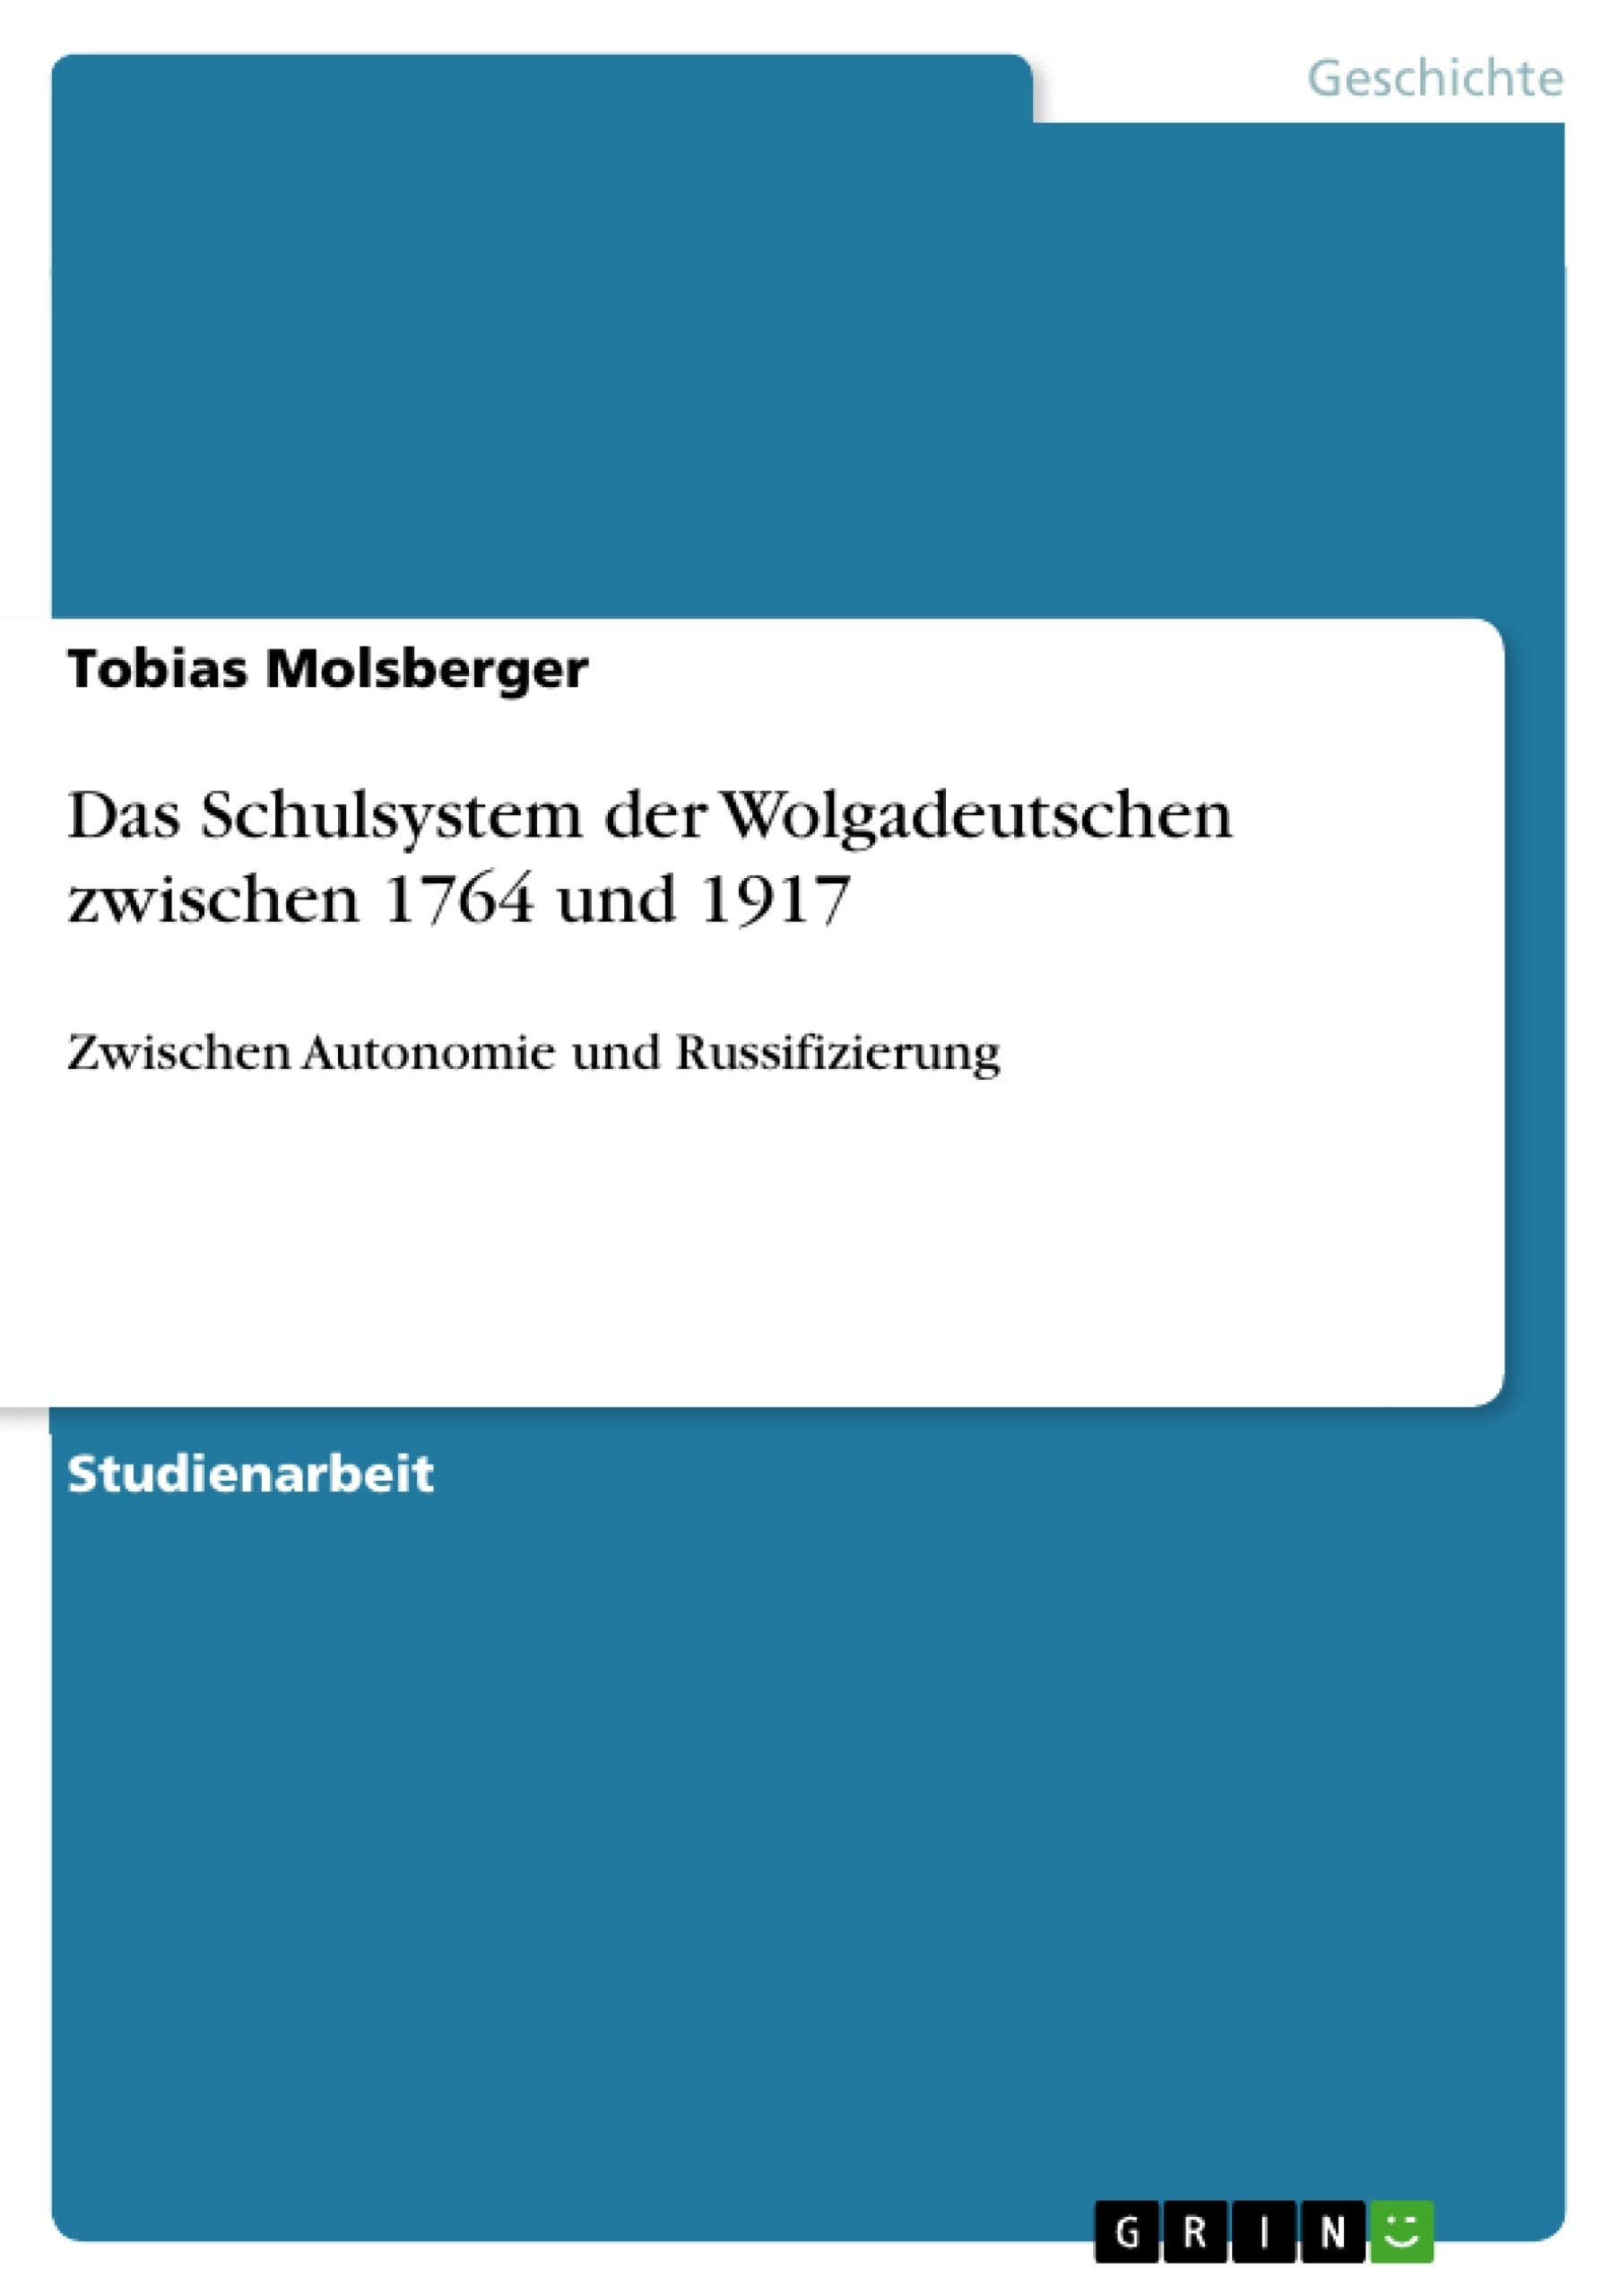 Titre: Das Schulsystem der Wolgadeutschen zwischen 1764 und 1917